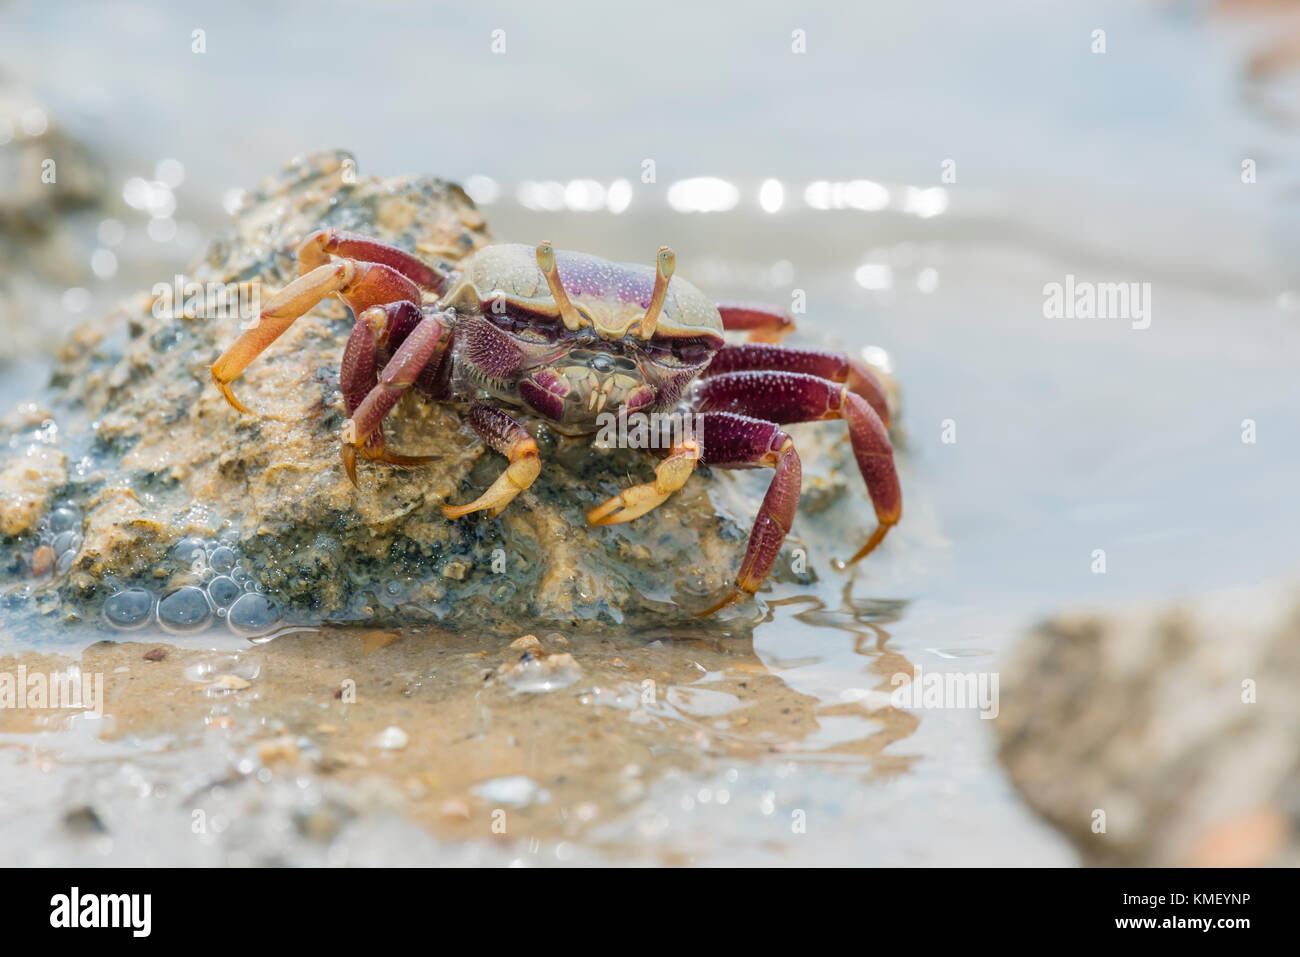 Maennliche Europaeische Winkerkrabbe, Uca tangeri, European Male Fiddler Crab Stock Photo